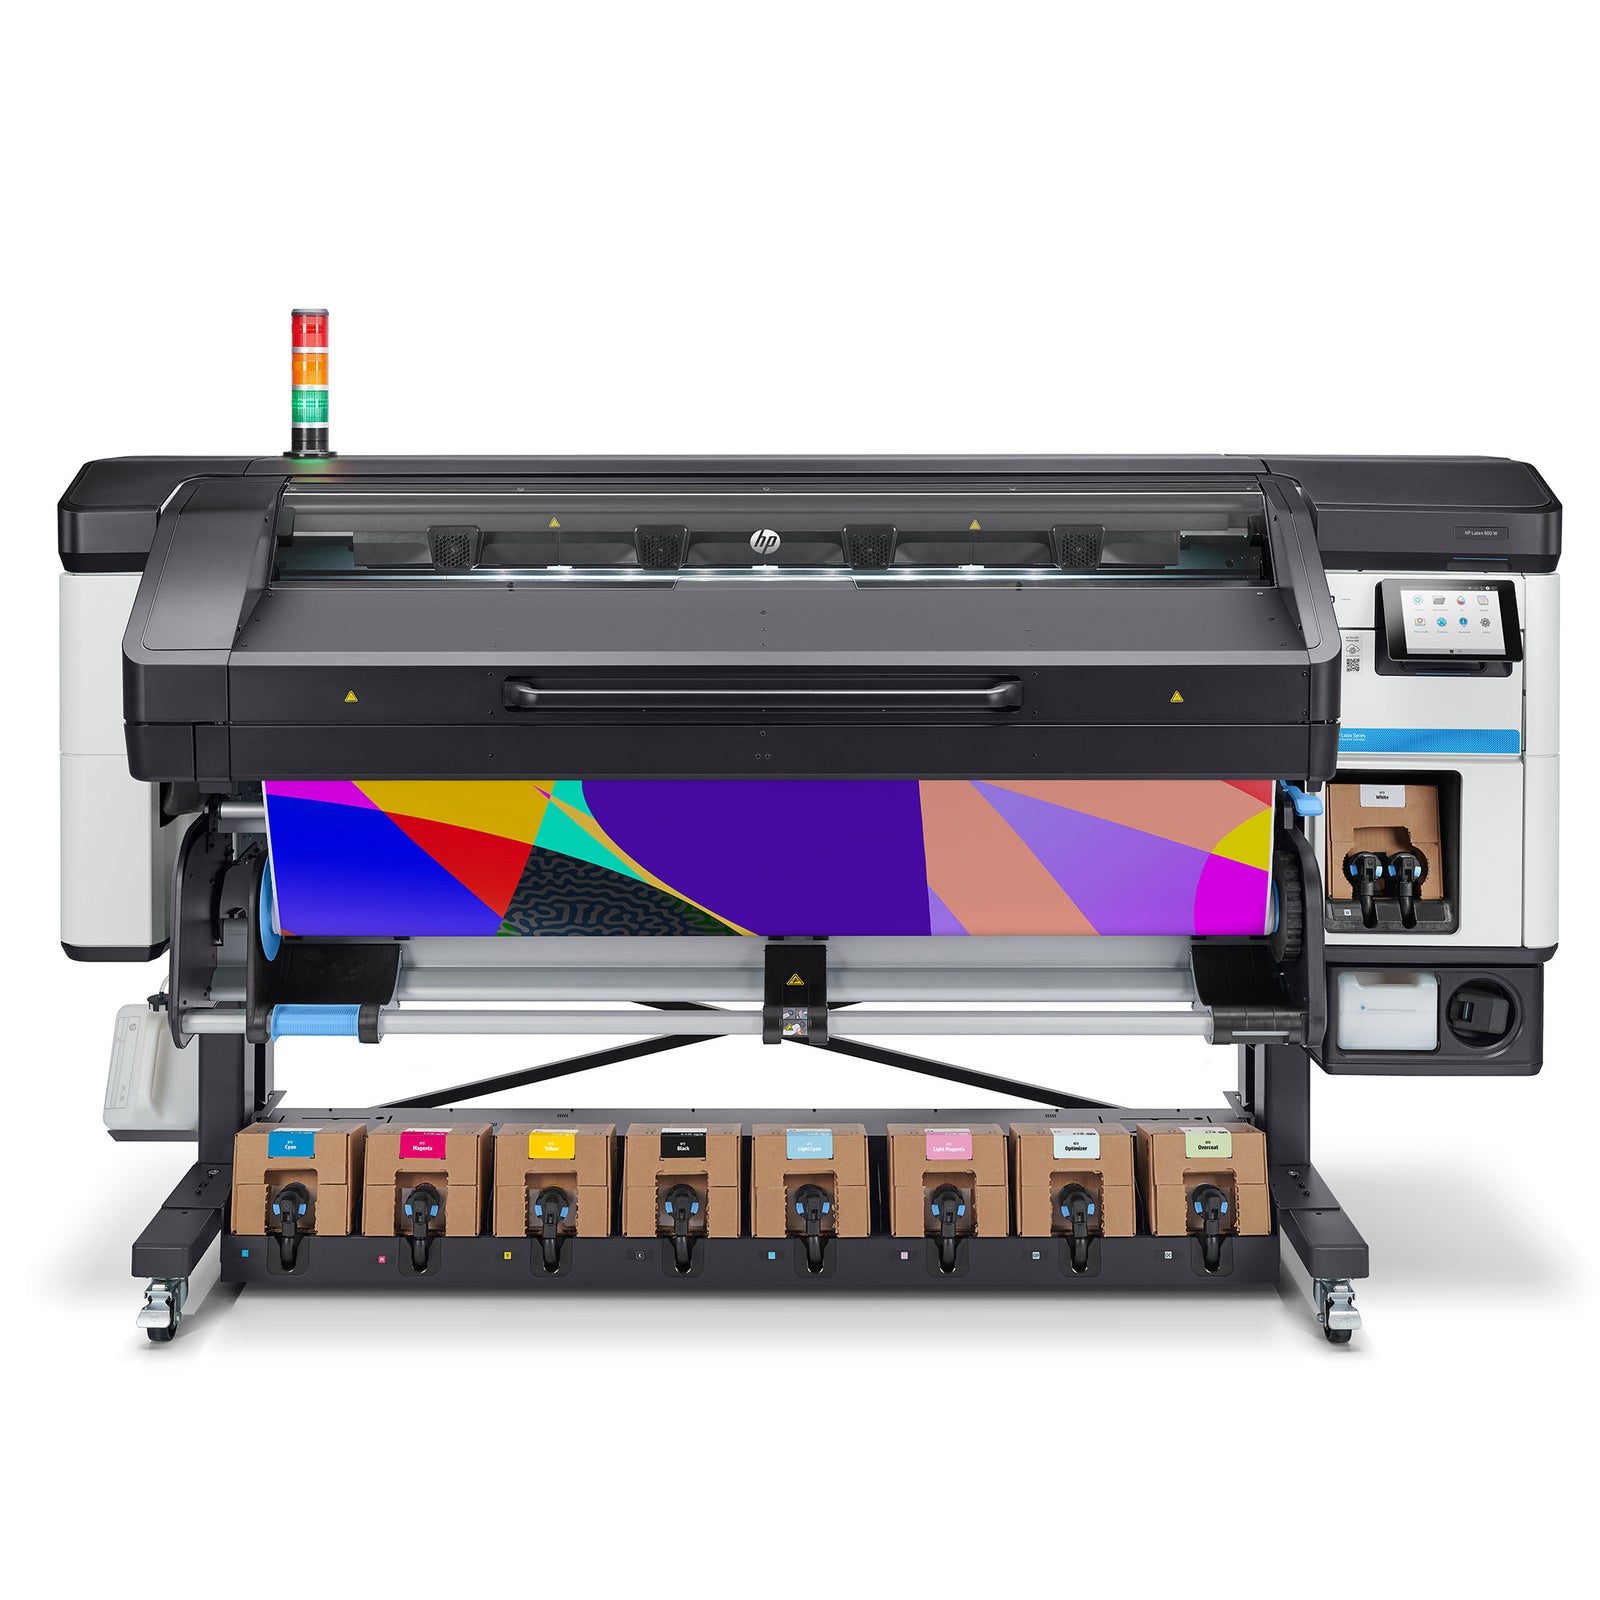 HP LATEX 800 W Printer